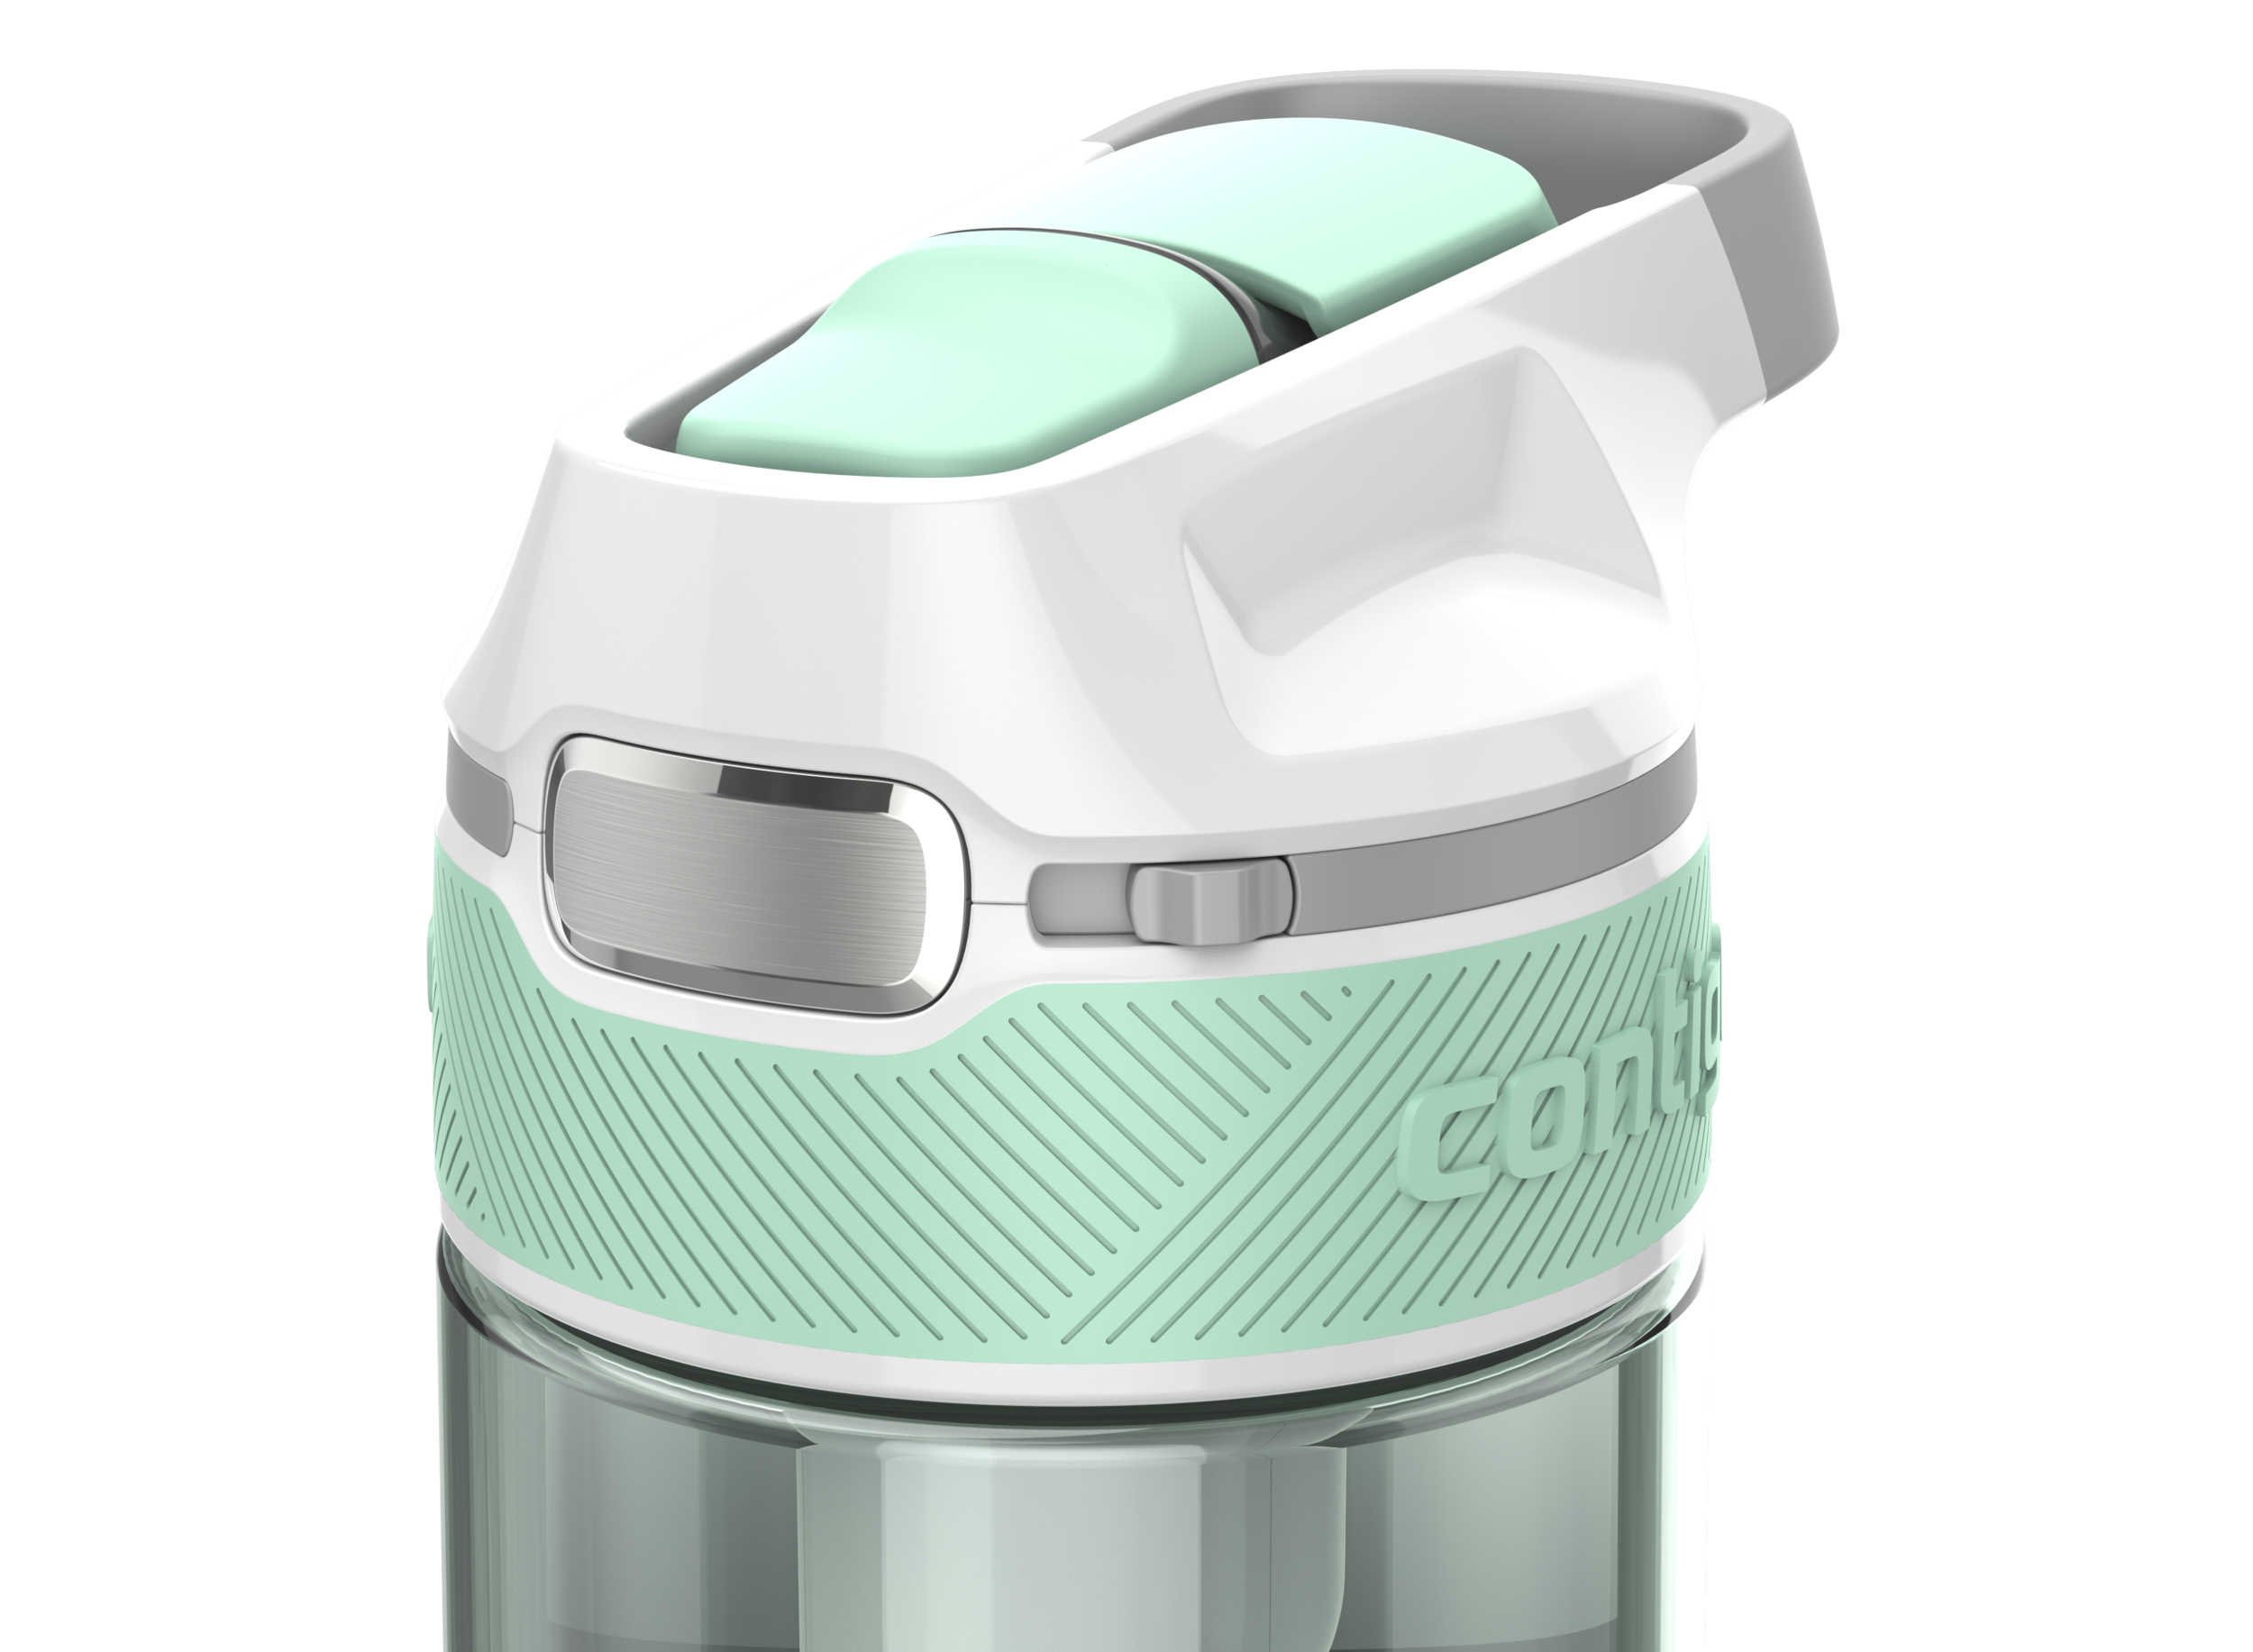 Contigo - Luxe Autoseal Bottle — Chad Davis Design